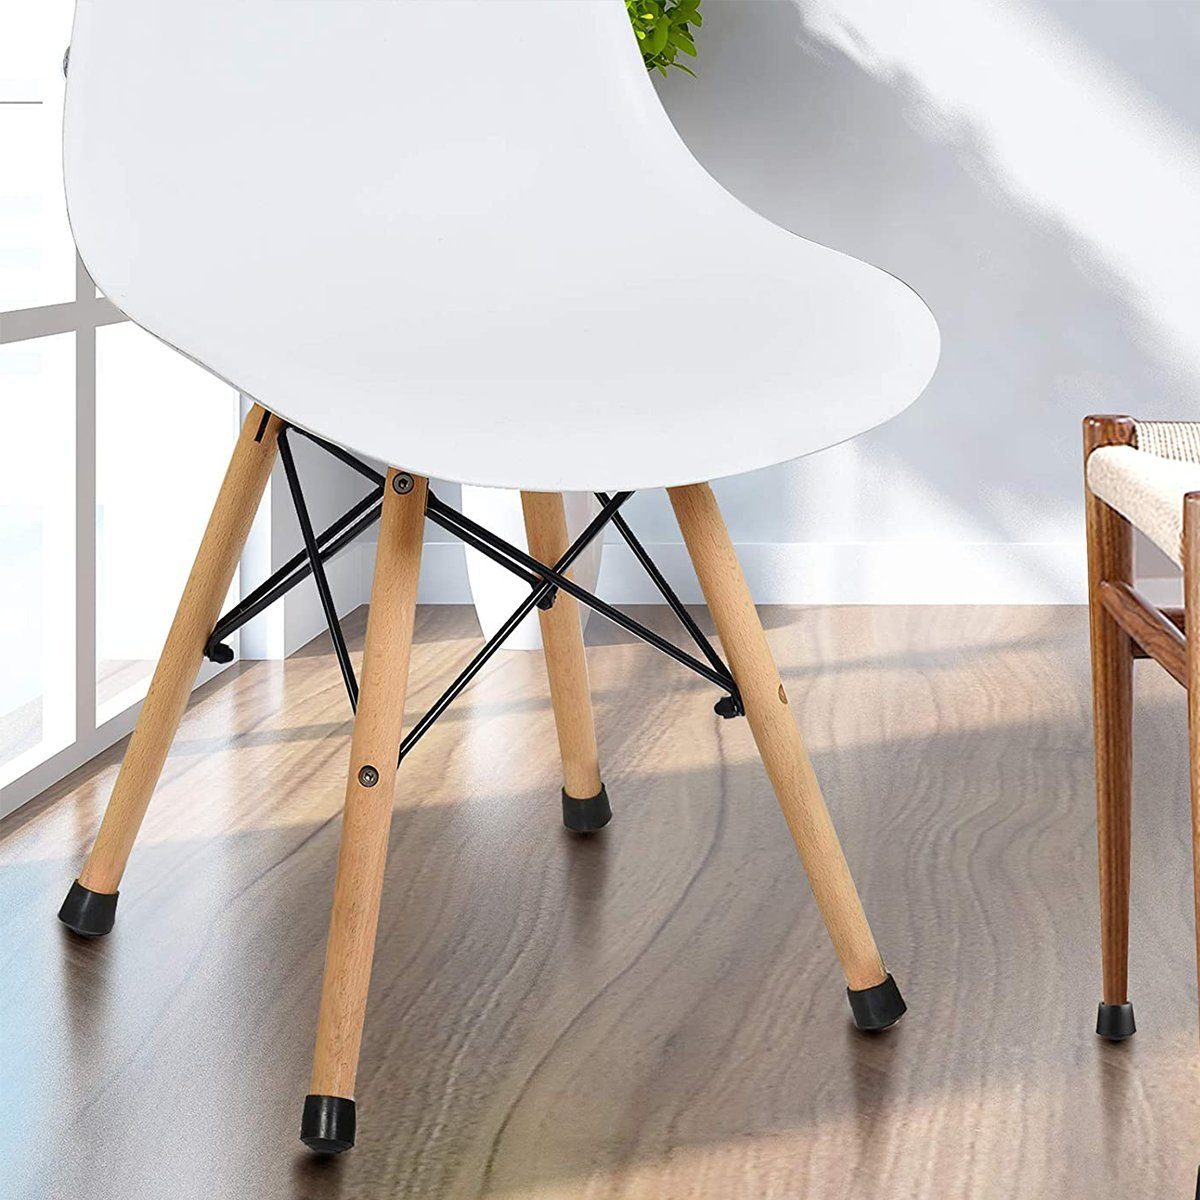 zu Füße Pads,Stuhlkappen, Flexibilität, nicht leicht Stuhlkappen Gummi Jormftte verformen Tischbein Starke